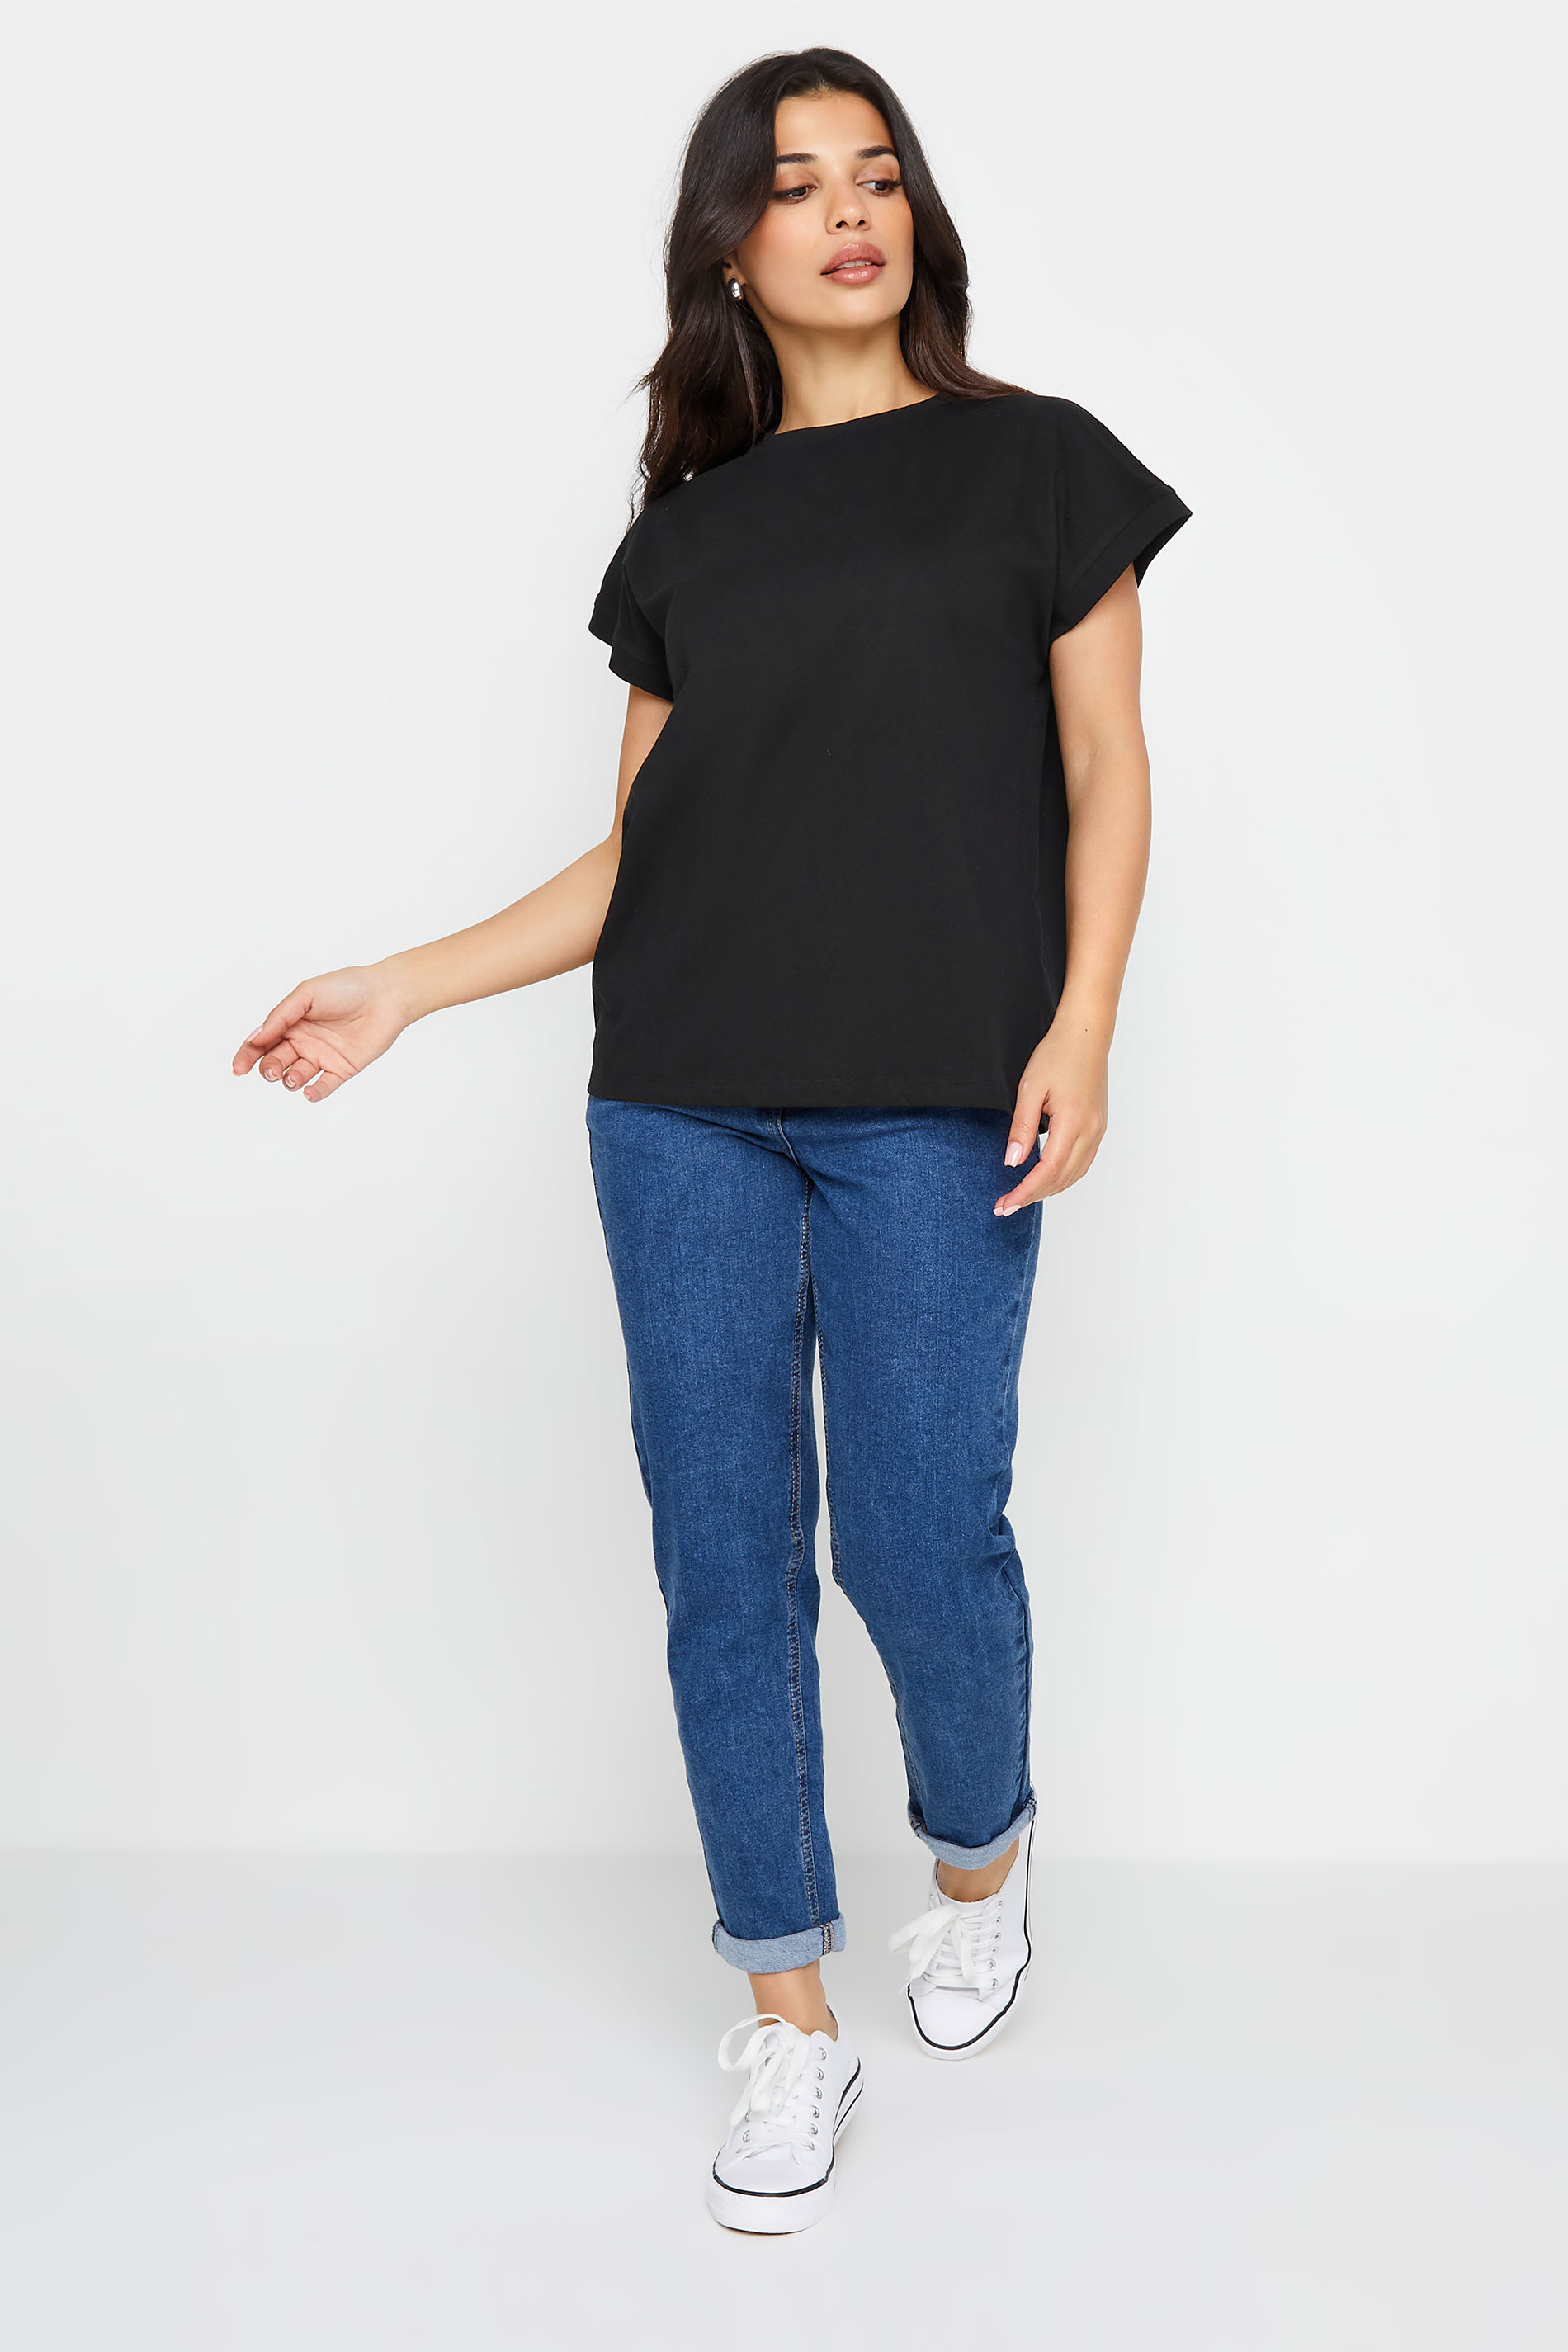 PixieGirl Petite Women's Black Short Sleeve T-Shirt | PixieGirl 2